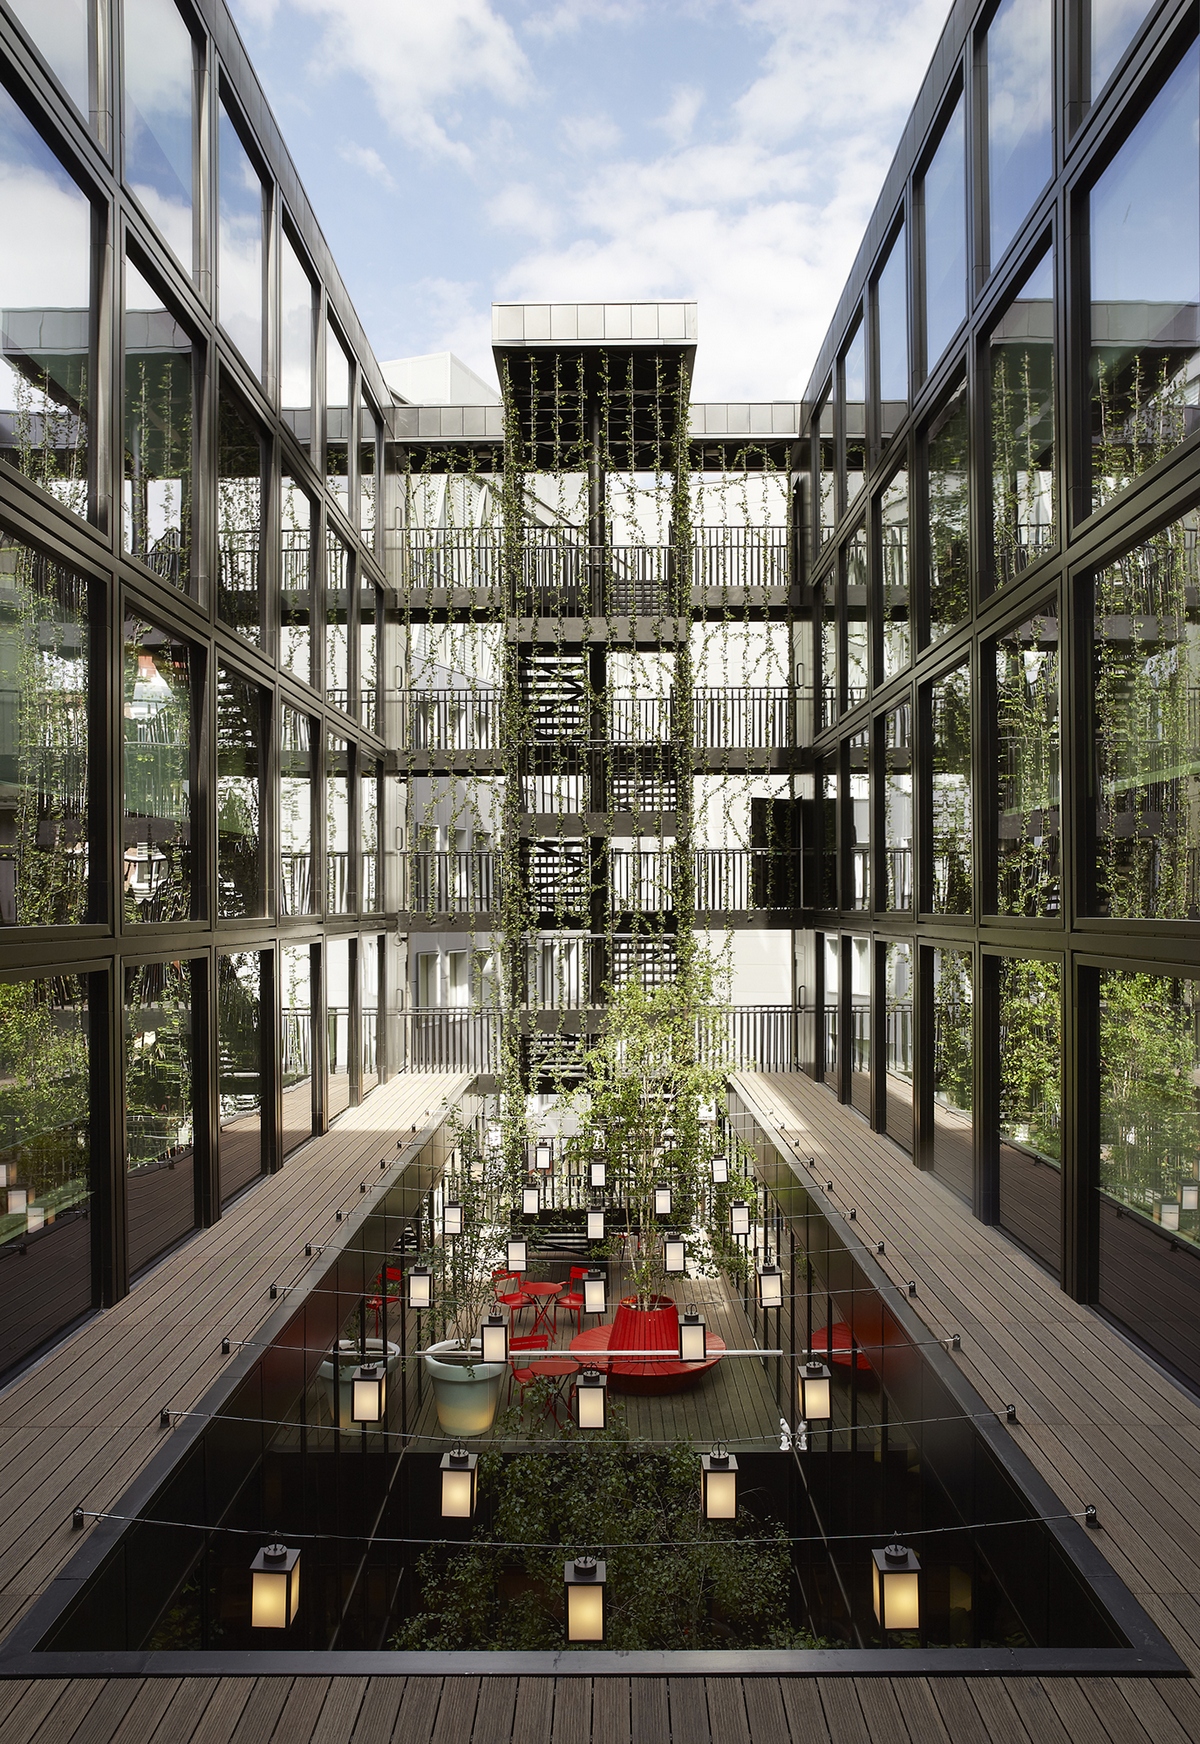 Первое место в категории «Отели и отдых». Отель CitizenM Bankside, построенный по проекту компании Concrete Architectural Associates для голландской фирмы сitizenM, находится в Лондоне.